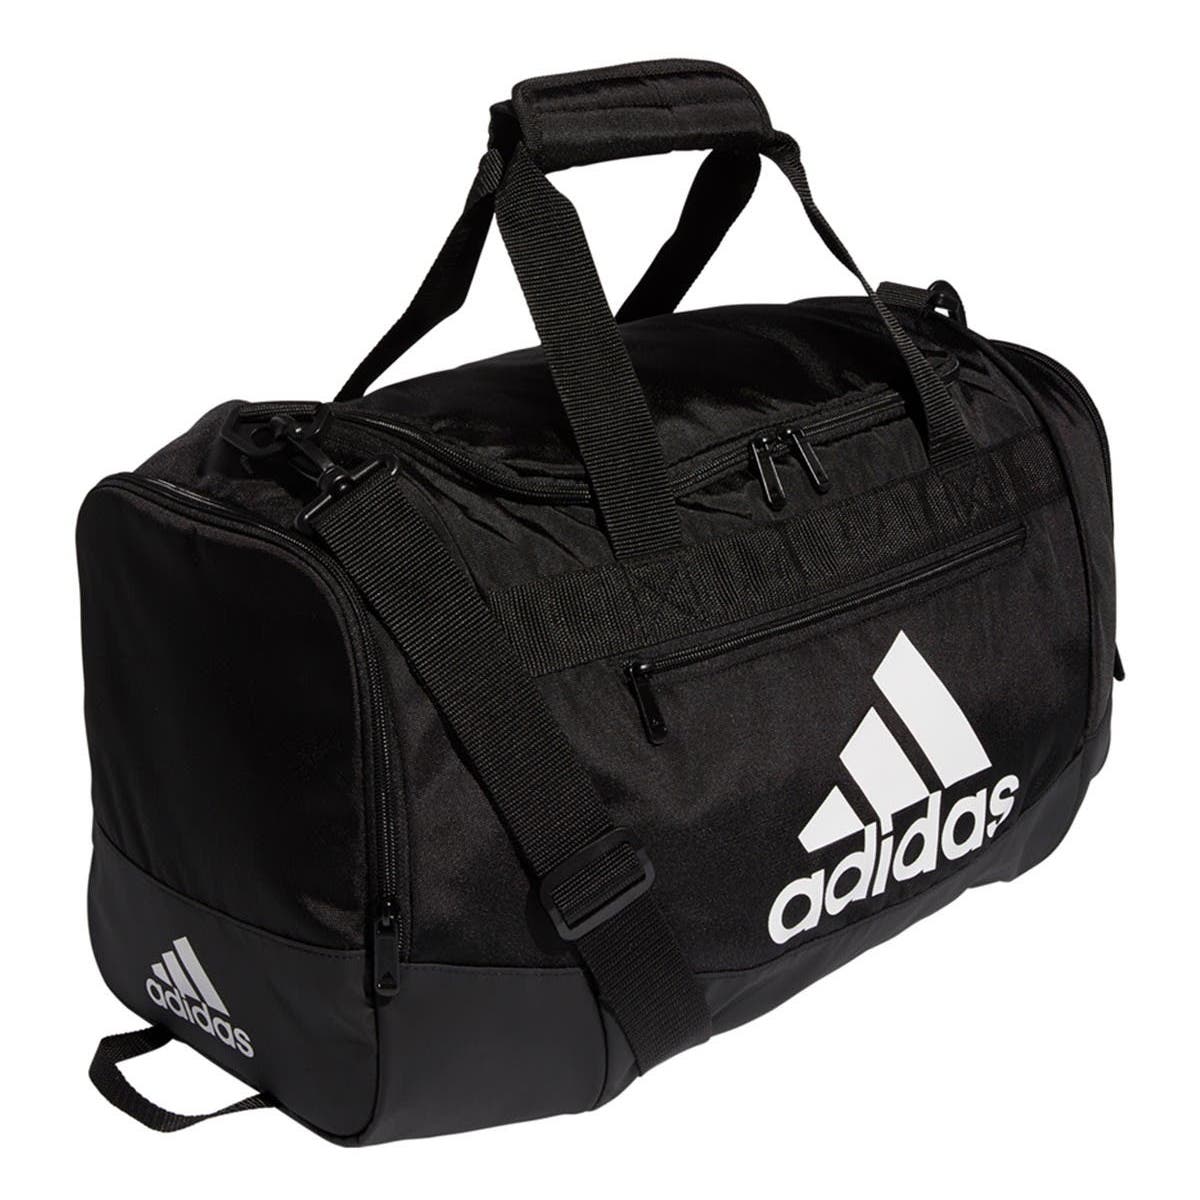 Adidas Defender IV Small Duffel Bag - Black-White (Diagonal)